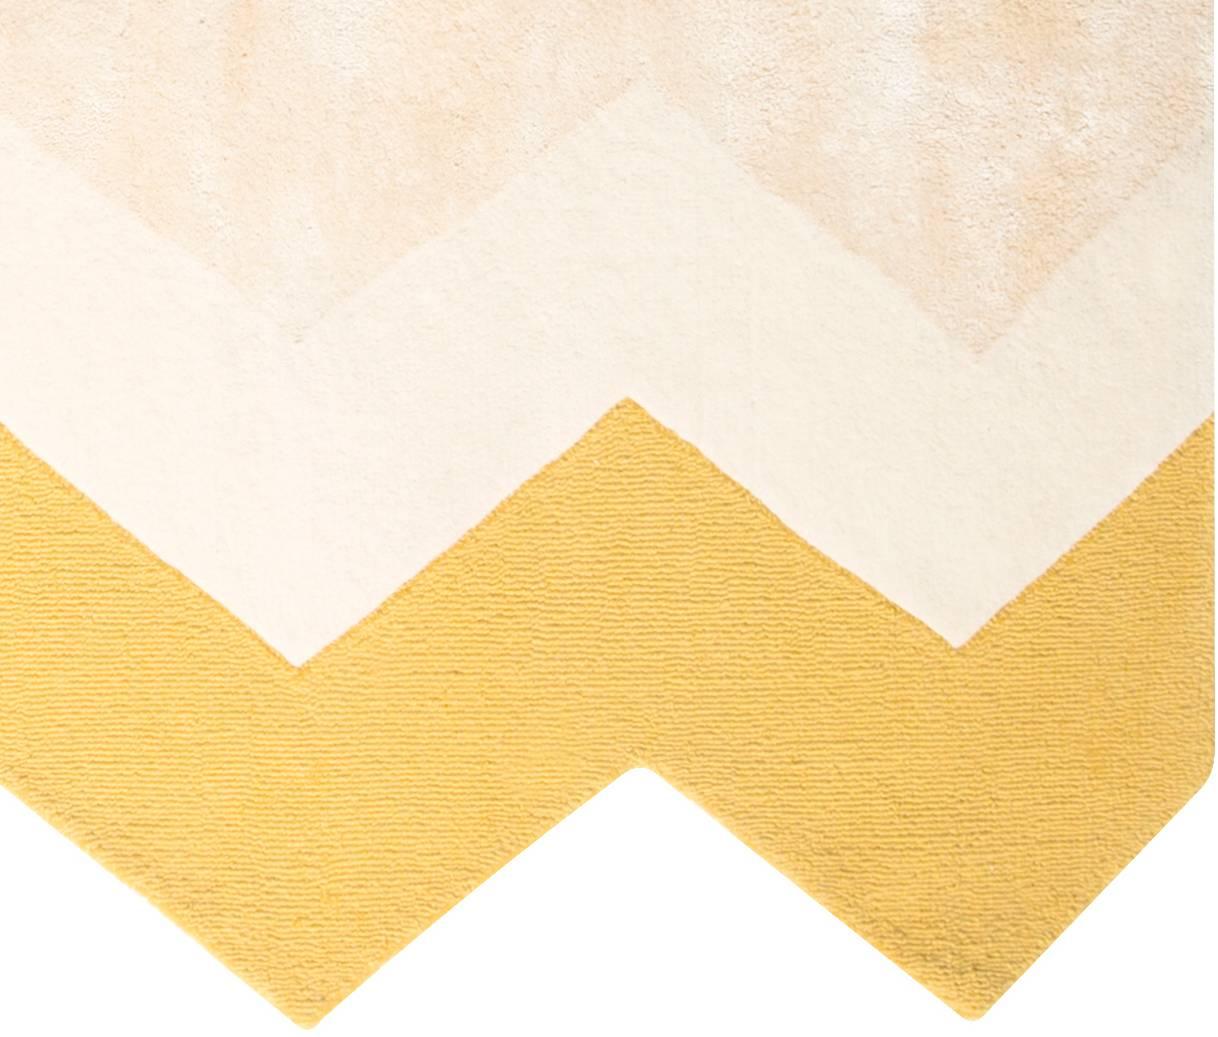 Der Zuko-Teppich zeichnet sich durch einen lustigen Chevron-Rand und einen passenden Druck in einer weichen, neutralen Farbpalette aus. Kein weiterer Nullleiter für die Erdung eines Raumes. Teppiche, die den Raum prägen. Handgetufteter Teppich aus